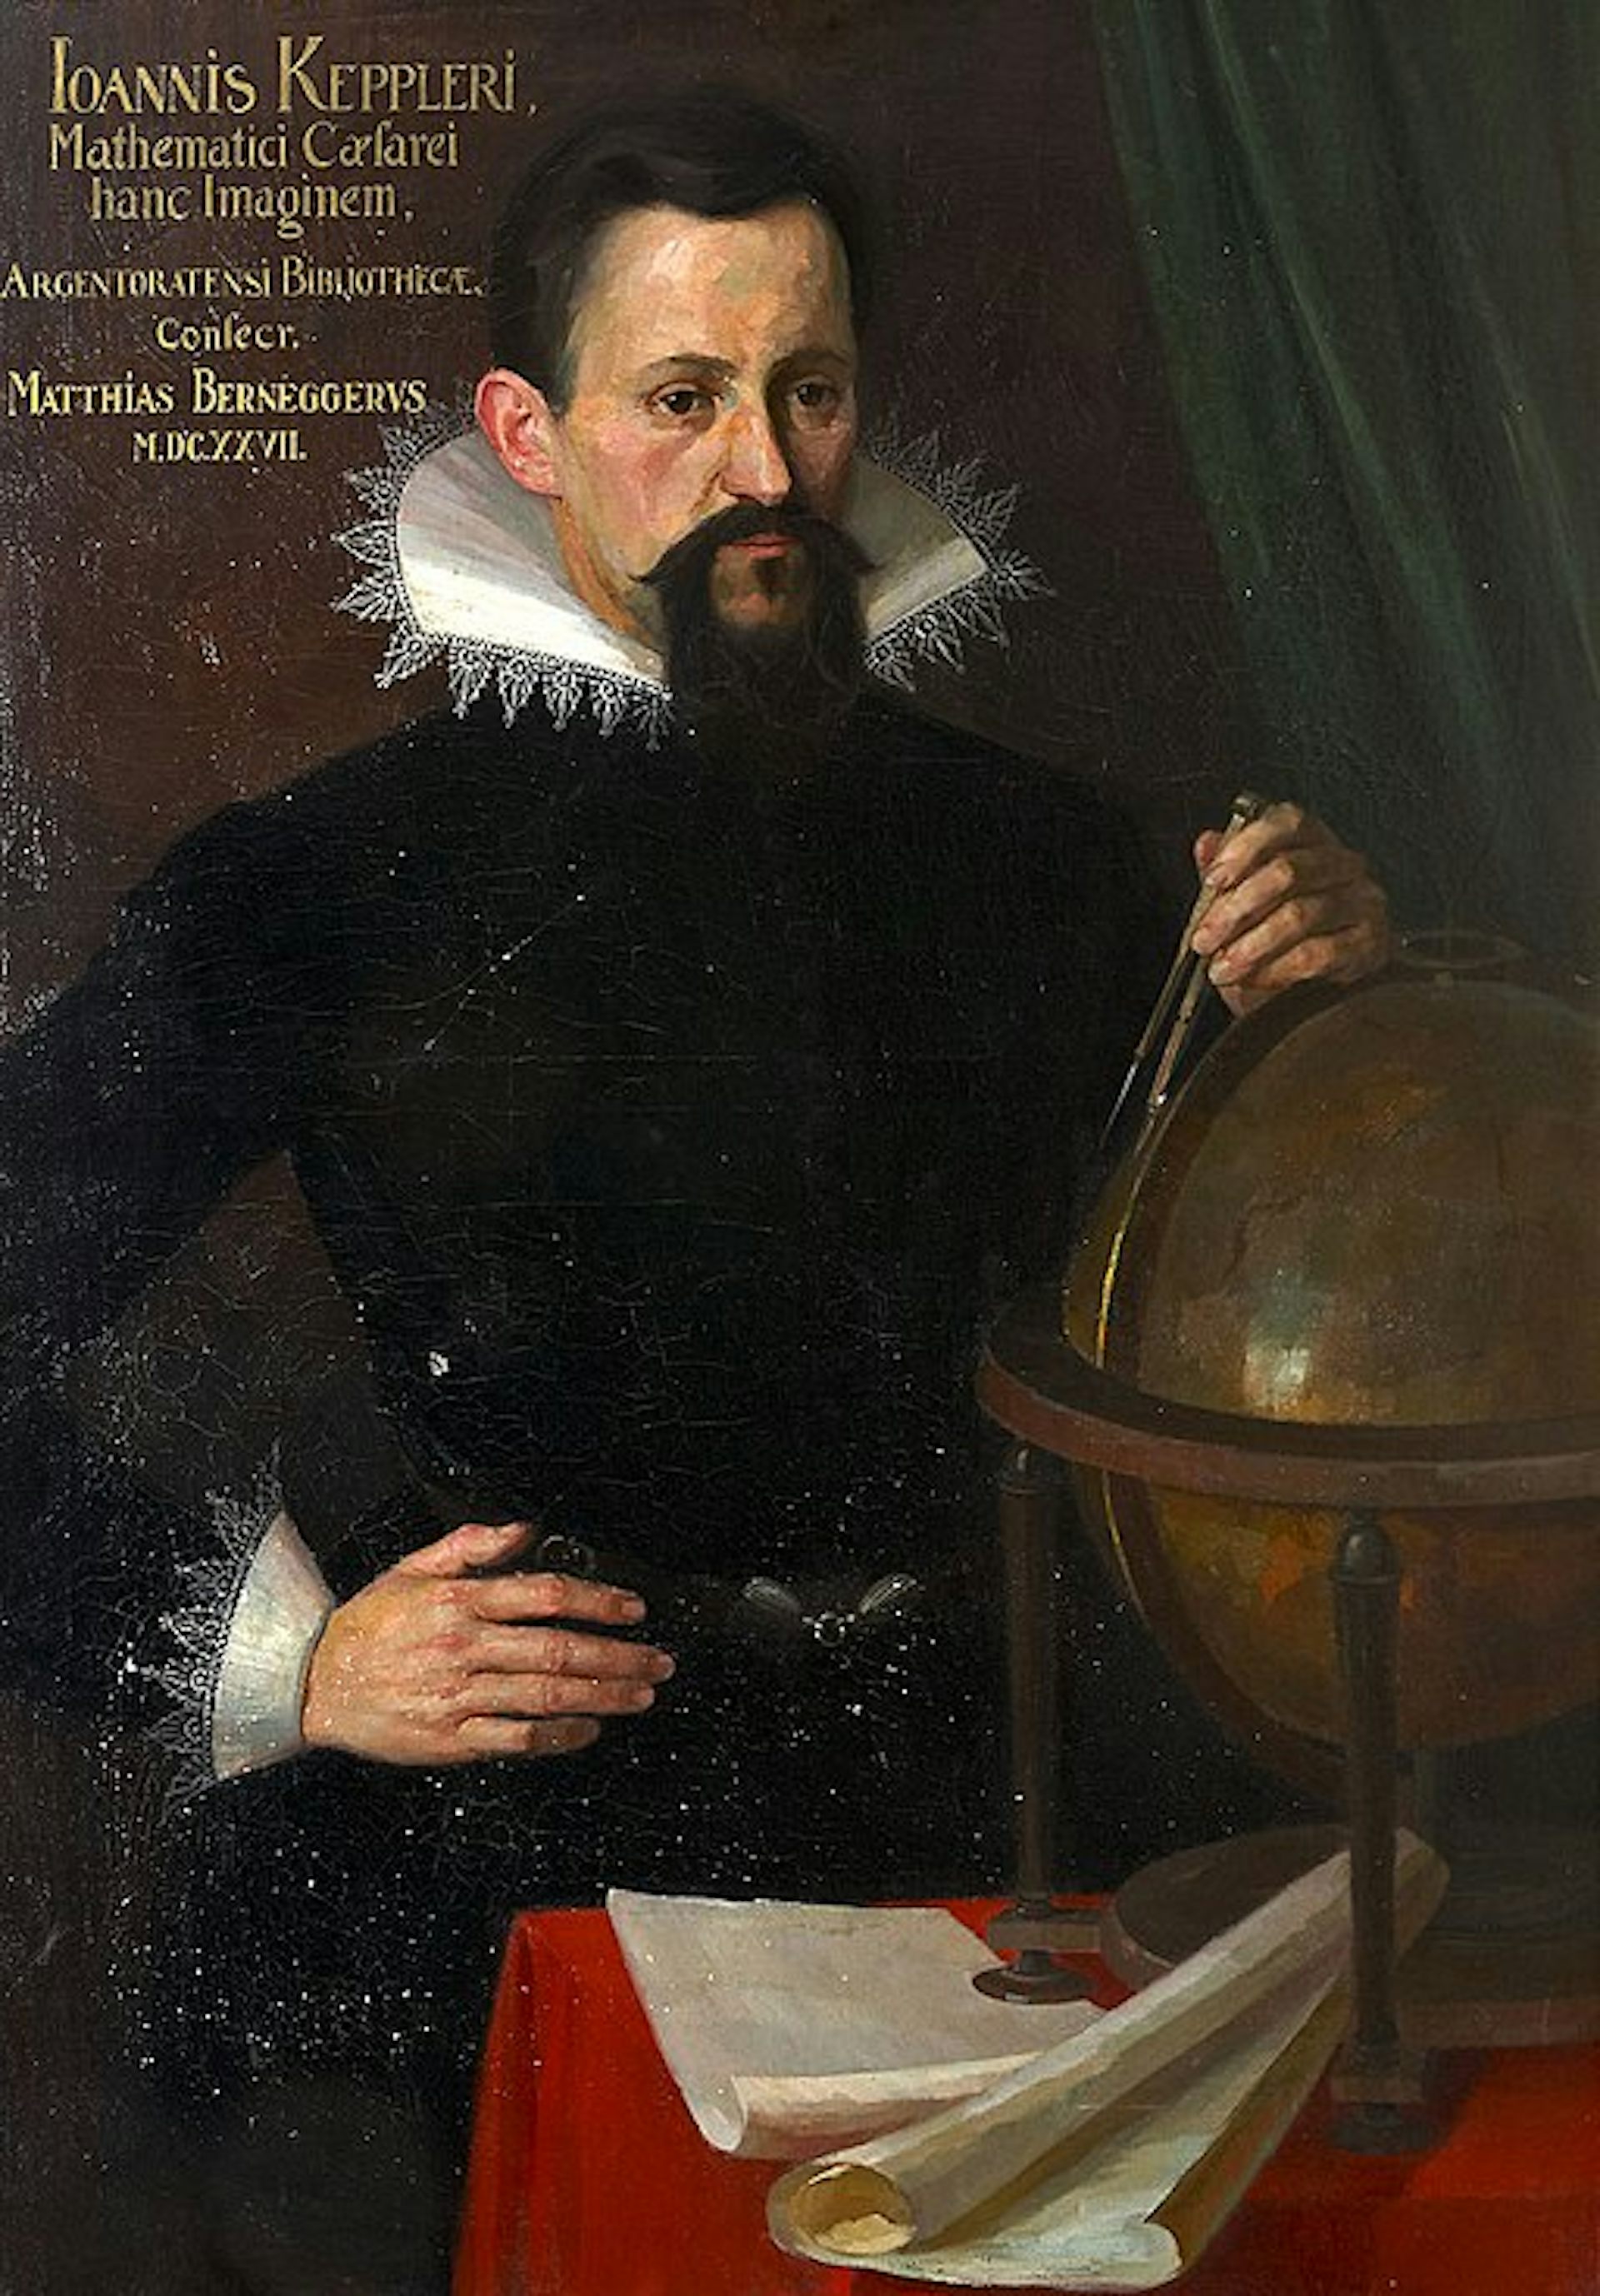 Một người đàn ông có mái tóc đen và để râu, mặc quần áo sẫm màu có cổ cầu kỳ, một tay chống hông và tay kia đặt trên quả địa cầu.